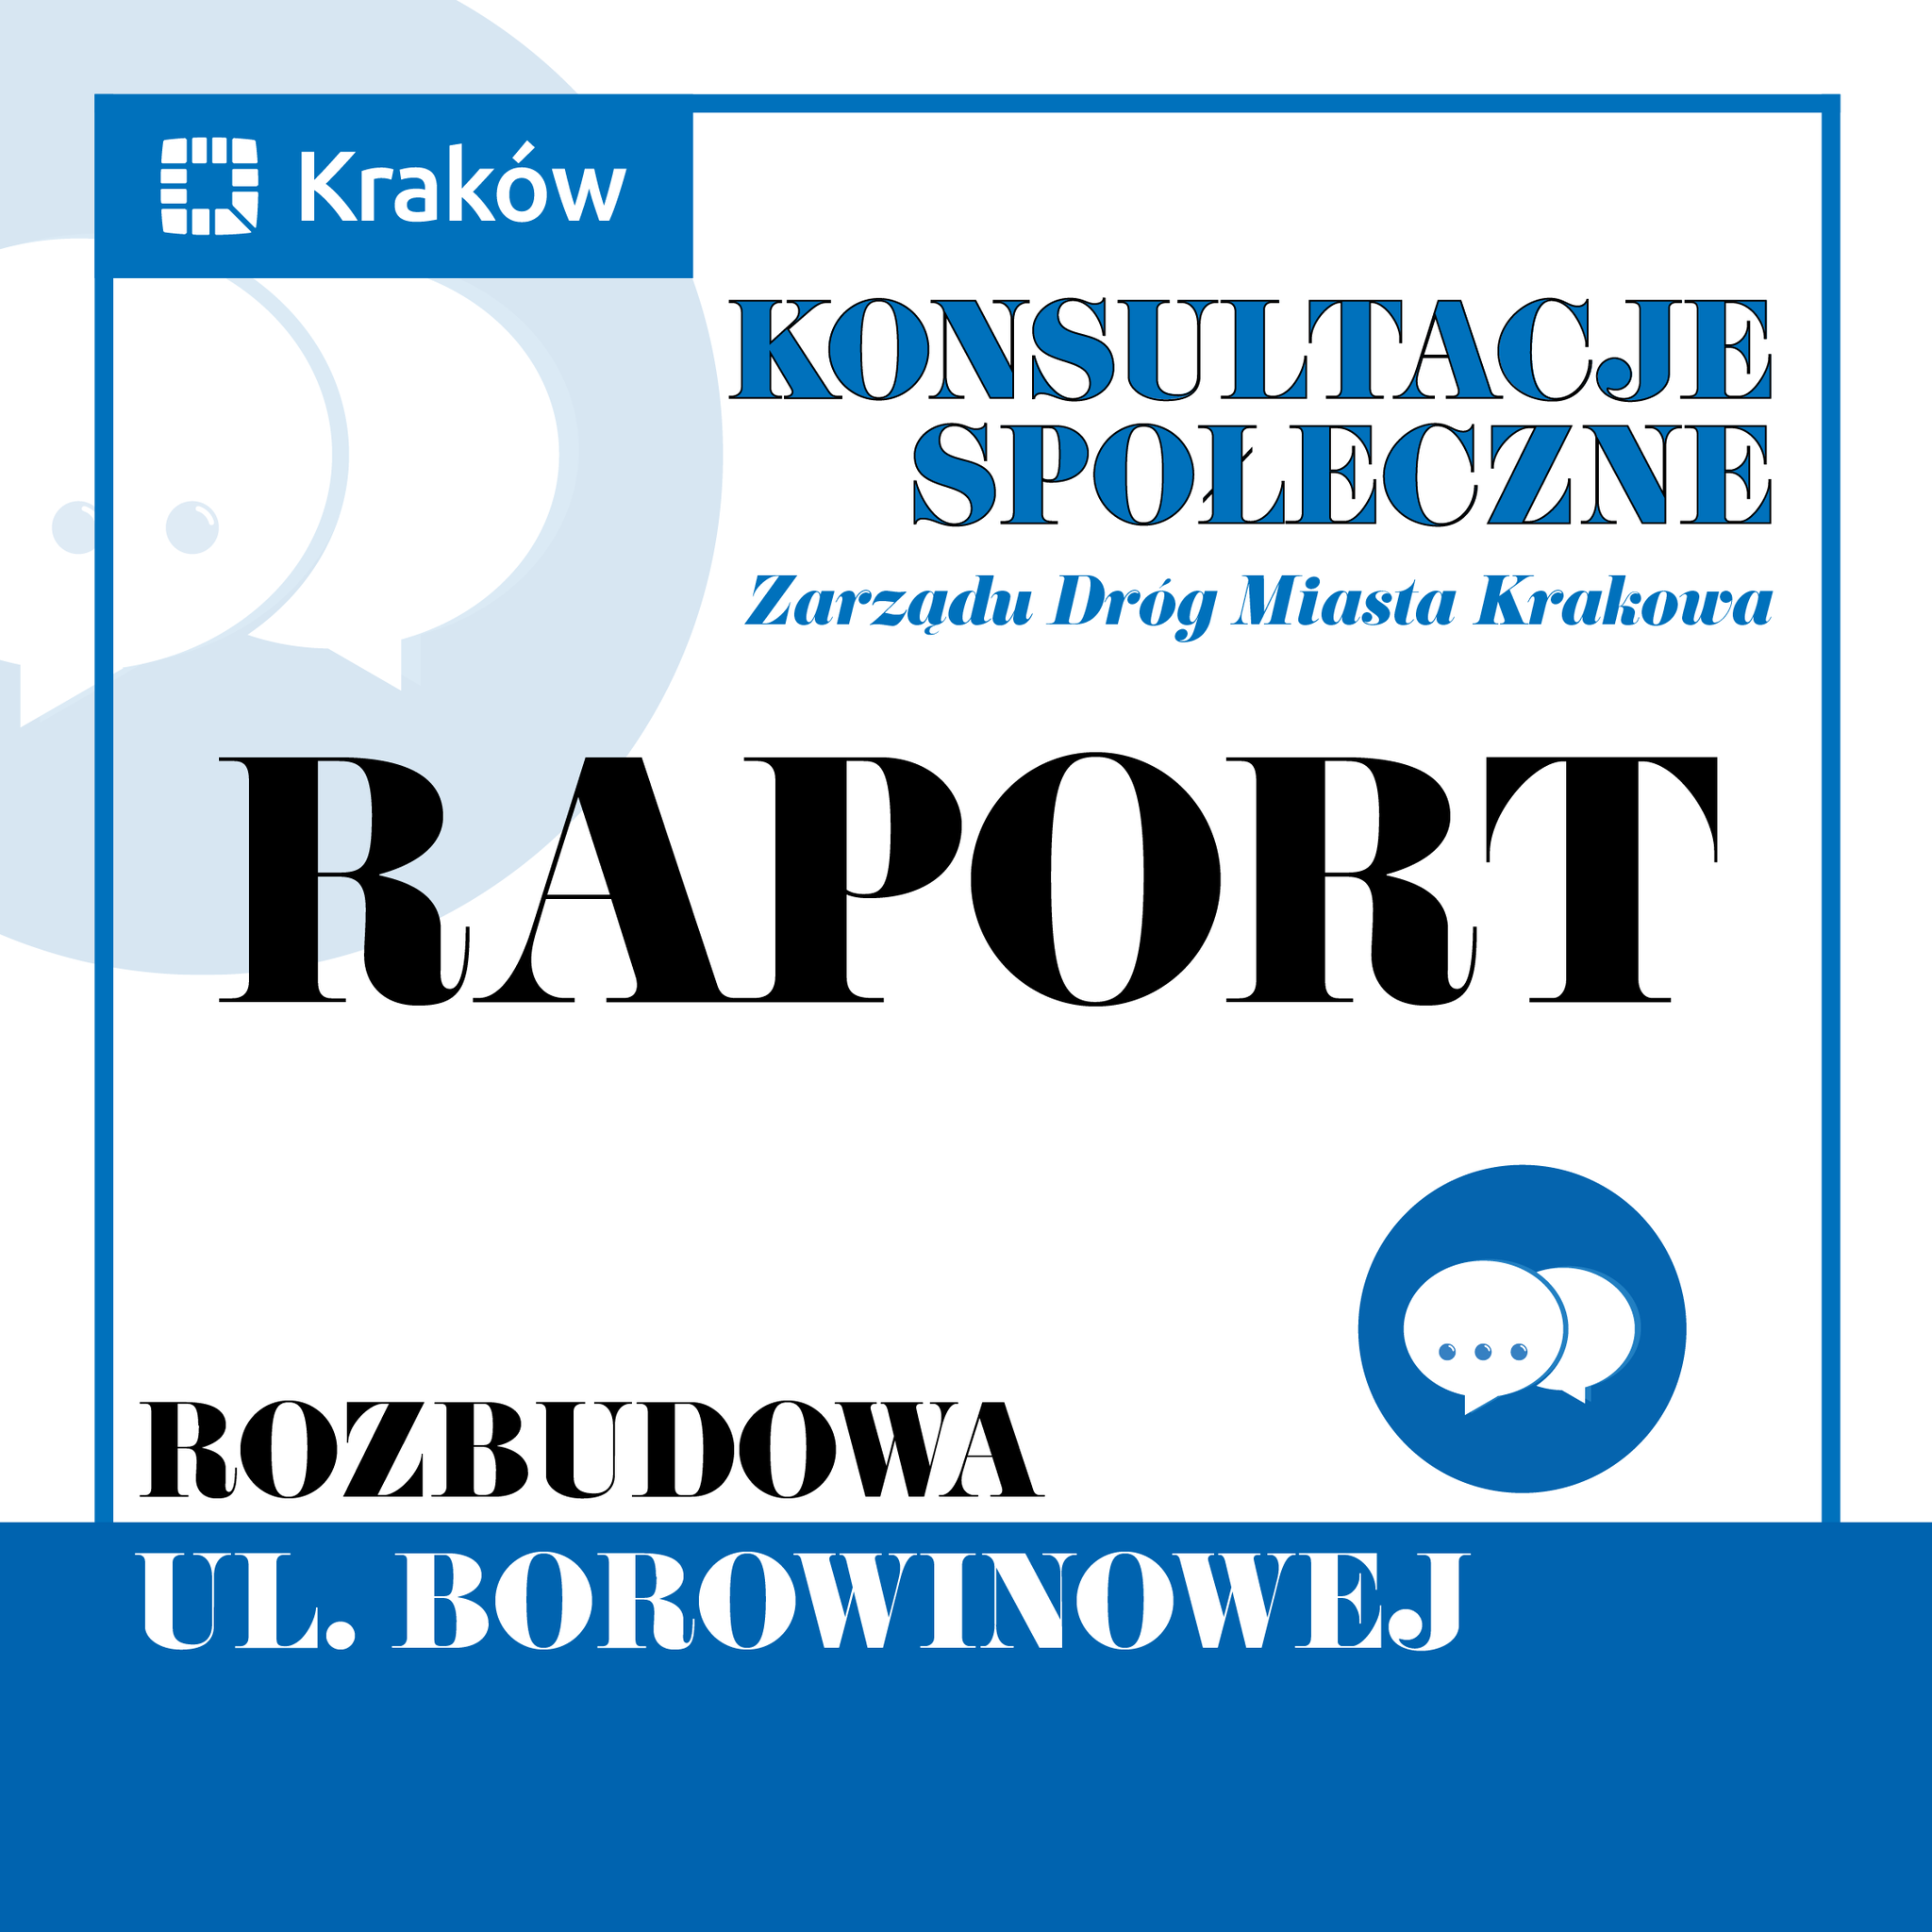 Rozbudowa ul. Borowinowej w Krakowie – raport z konsultacji społecznych